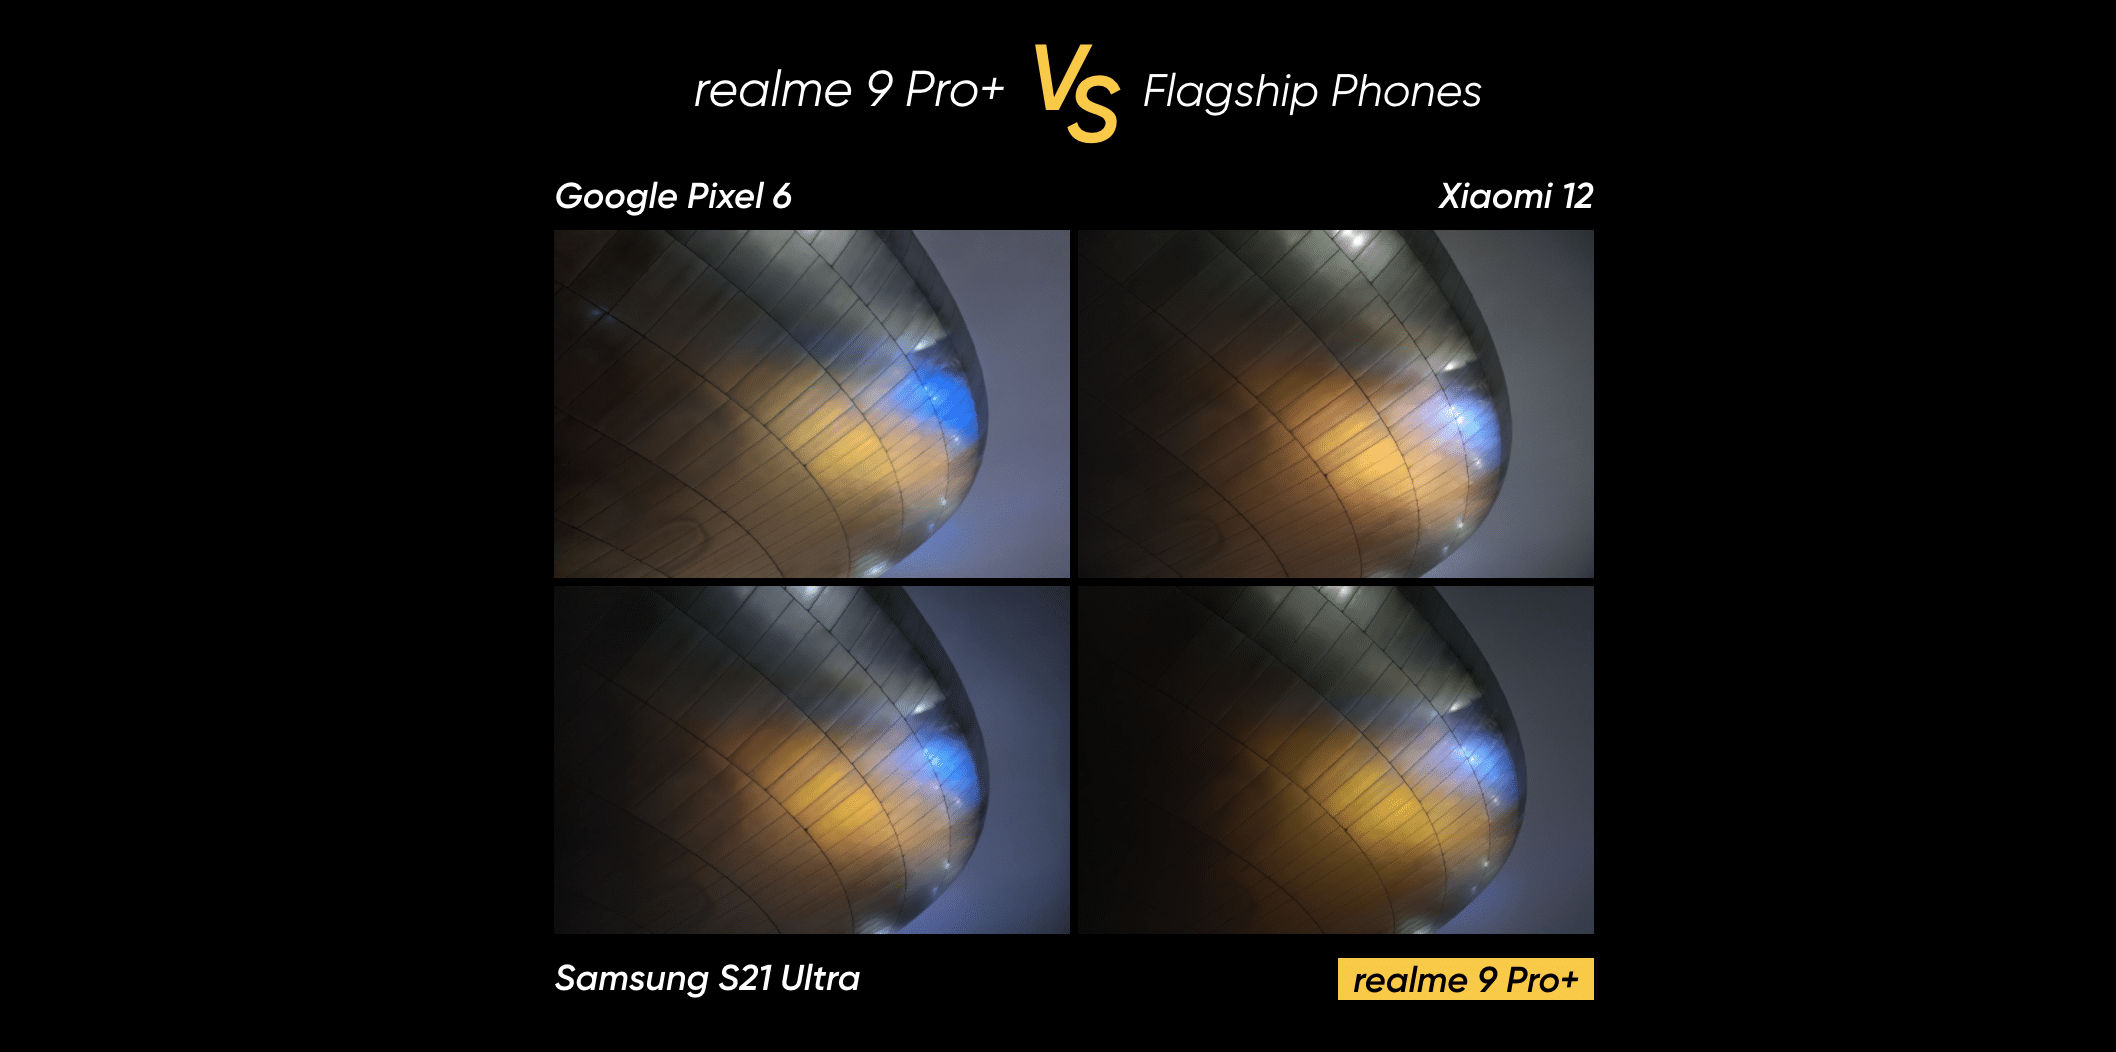 เรียลมี เผยภาพถ่ายเปรียบเทียบ realme 9 Pro+ กับ Android แฟล็กชิปอย่าง Google Pixel 6, Xioami 12 และ Samsung Galaxy S21 Ultra